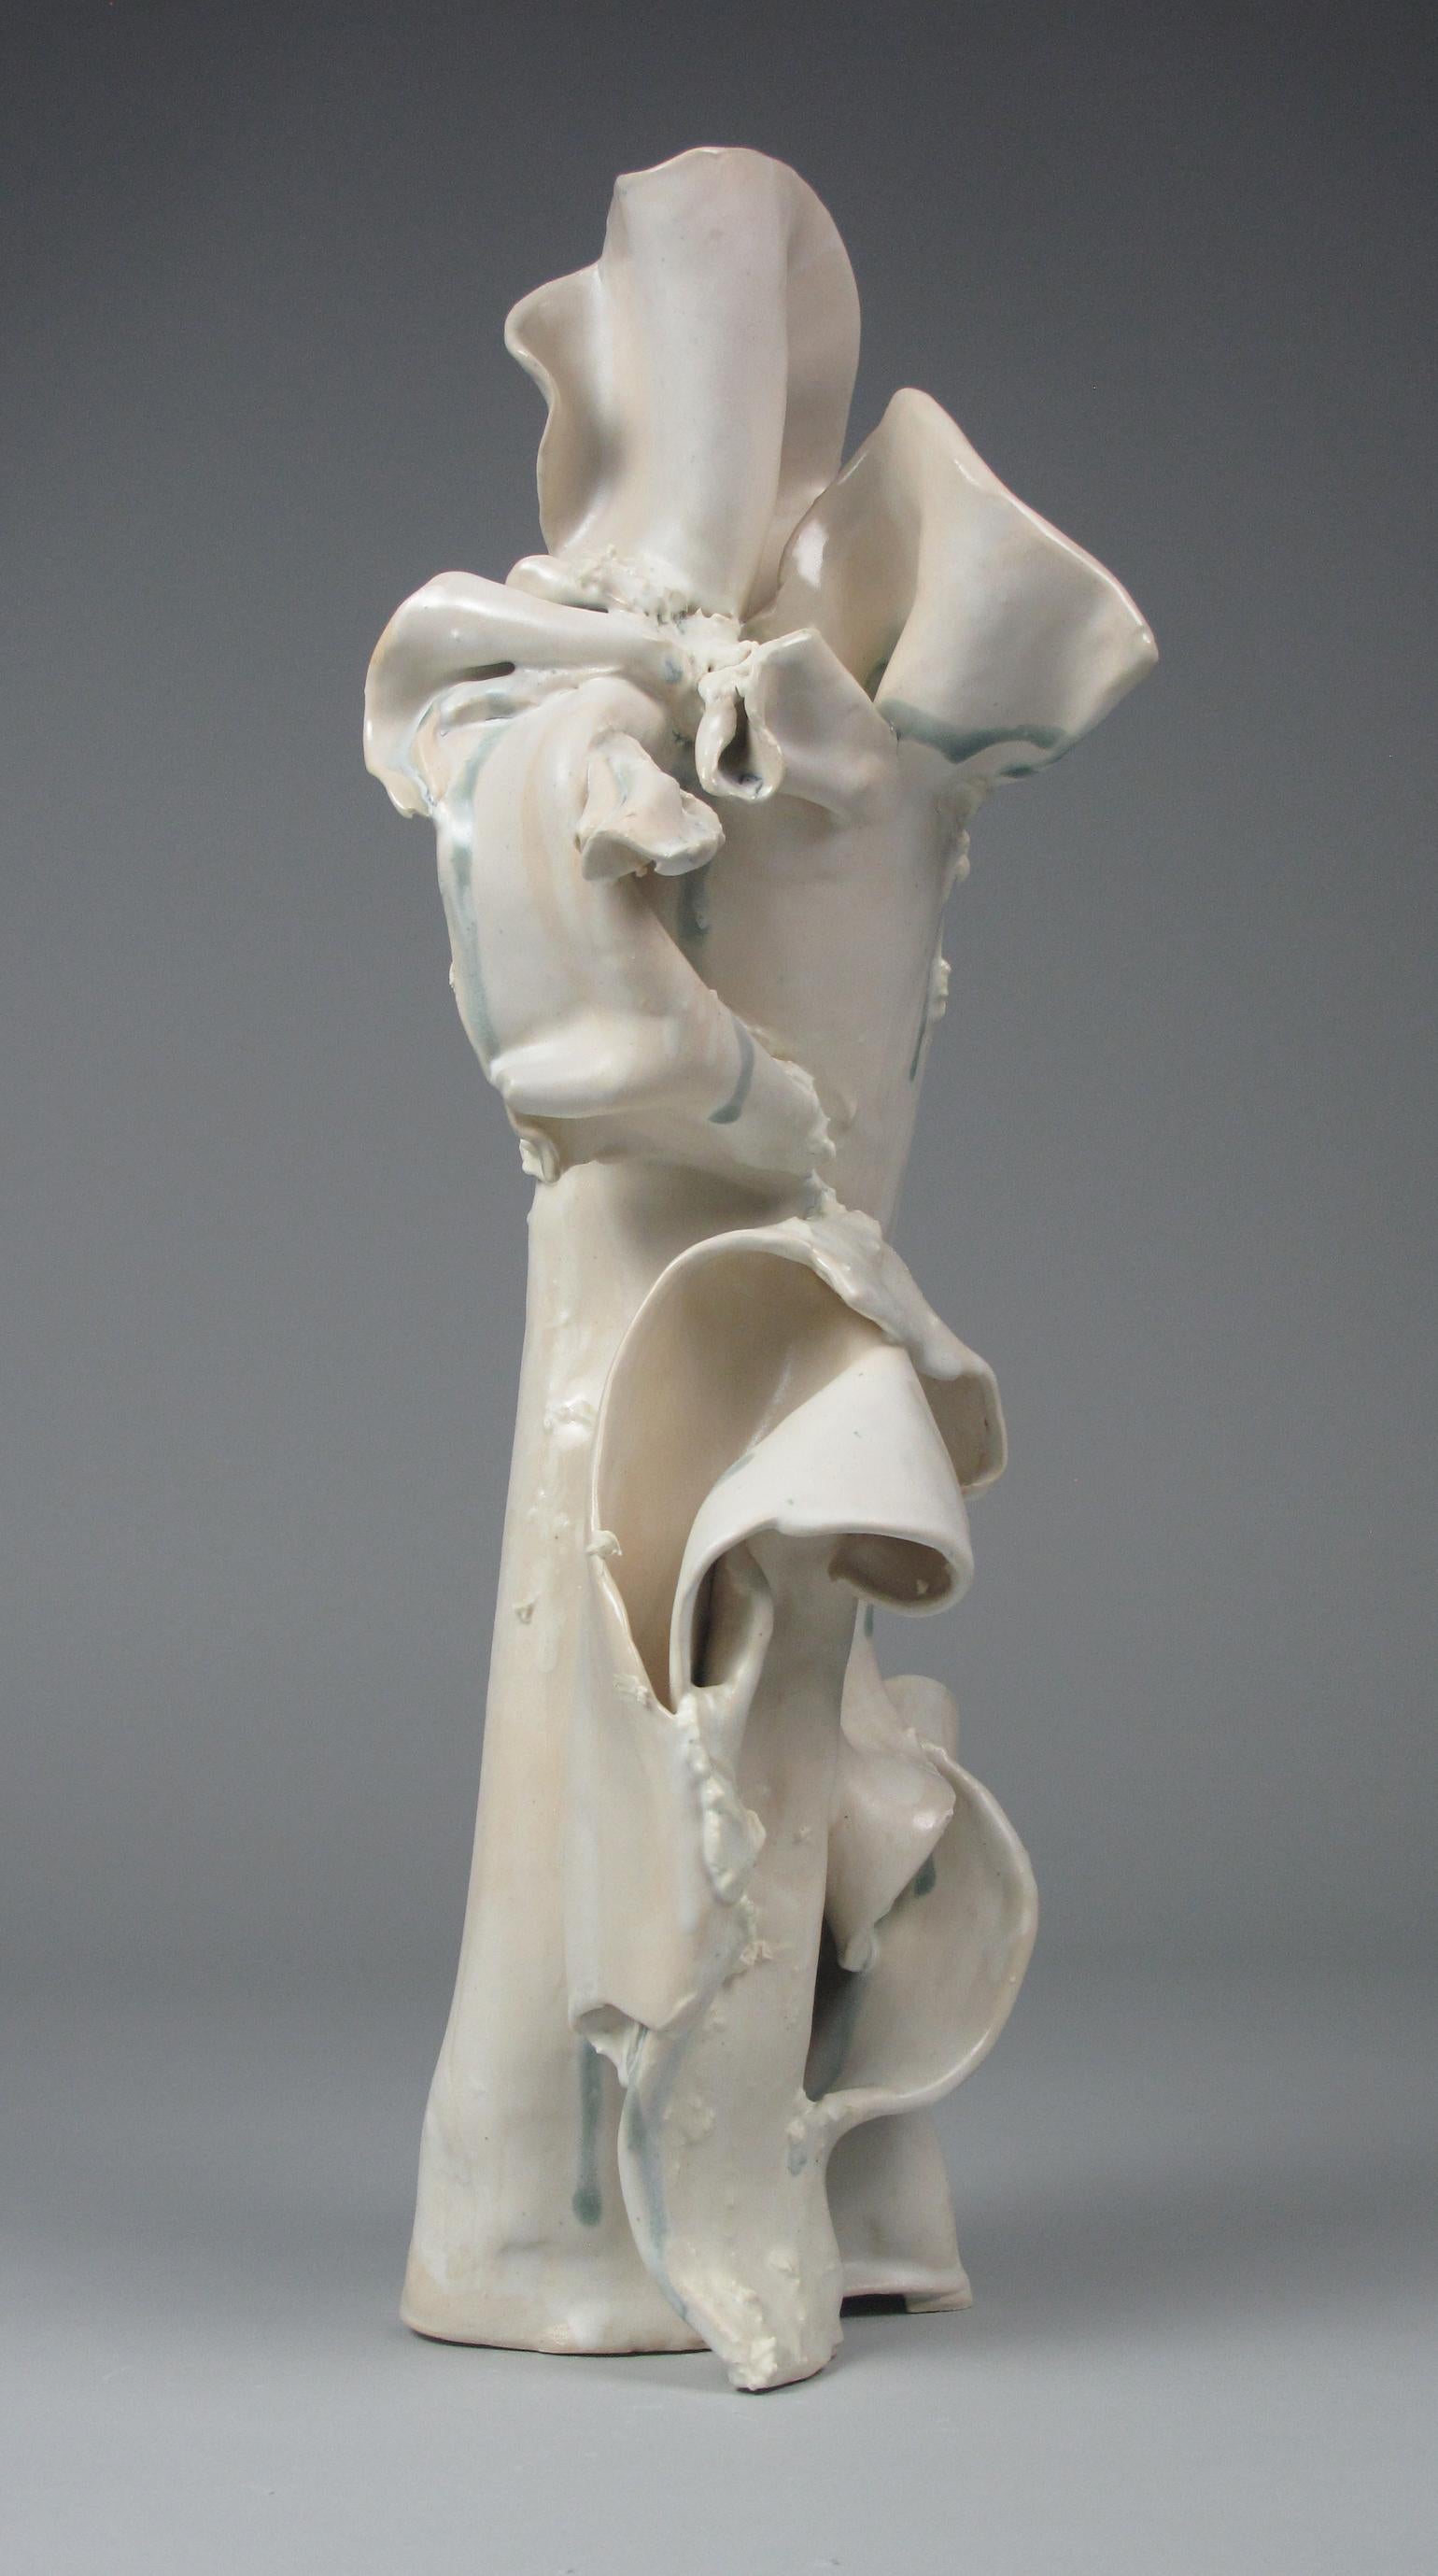 Abstract Sculpture Sara Fine-Wilson - "Fold", gestuel, céramique, sculpture, blanc, crème, gris, bleu, grès